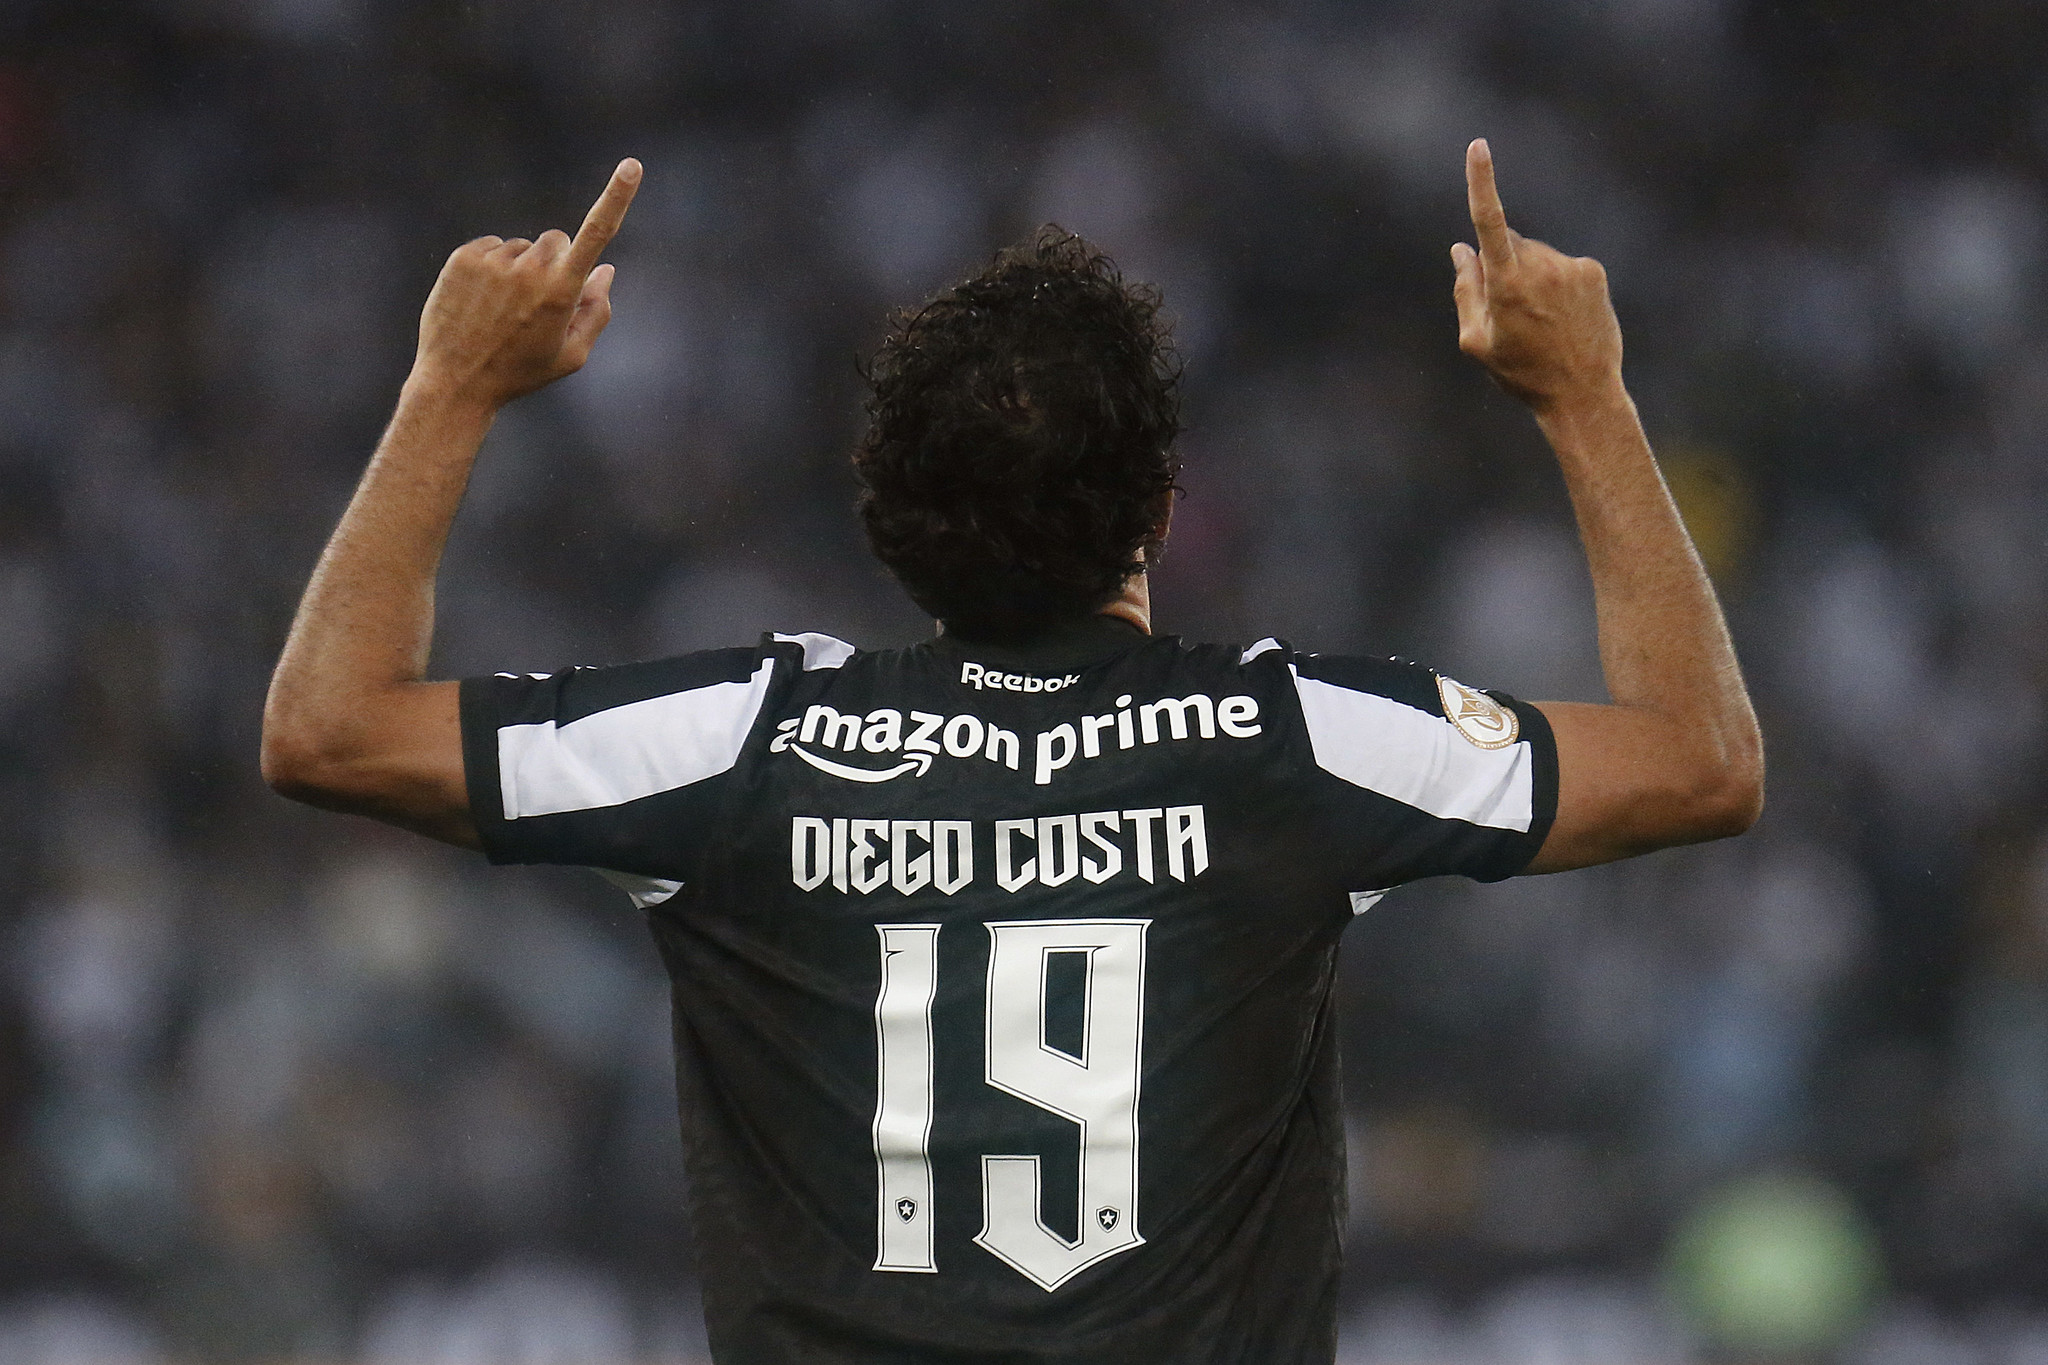 Diego Costa comemorando gol em partida pelo Botafogo. (Foto: Vitor Silva/Botafogo.)